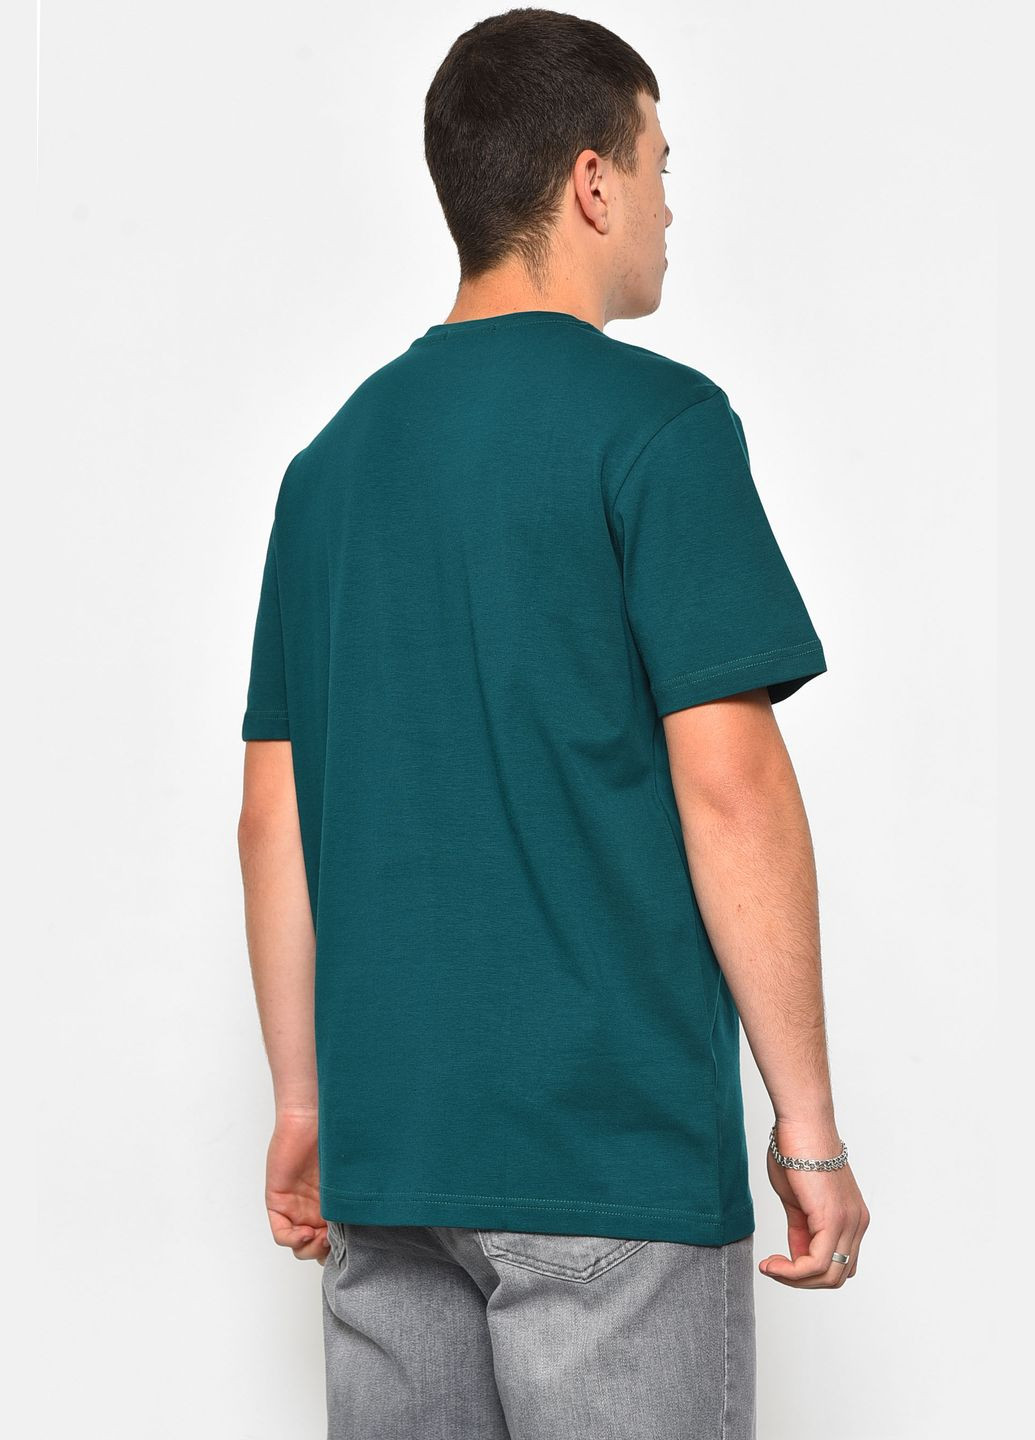 Смарагдова футболка чоловіча напівбатальна смарагдового кольору Let's Shop